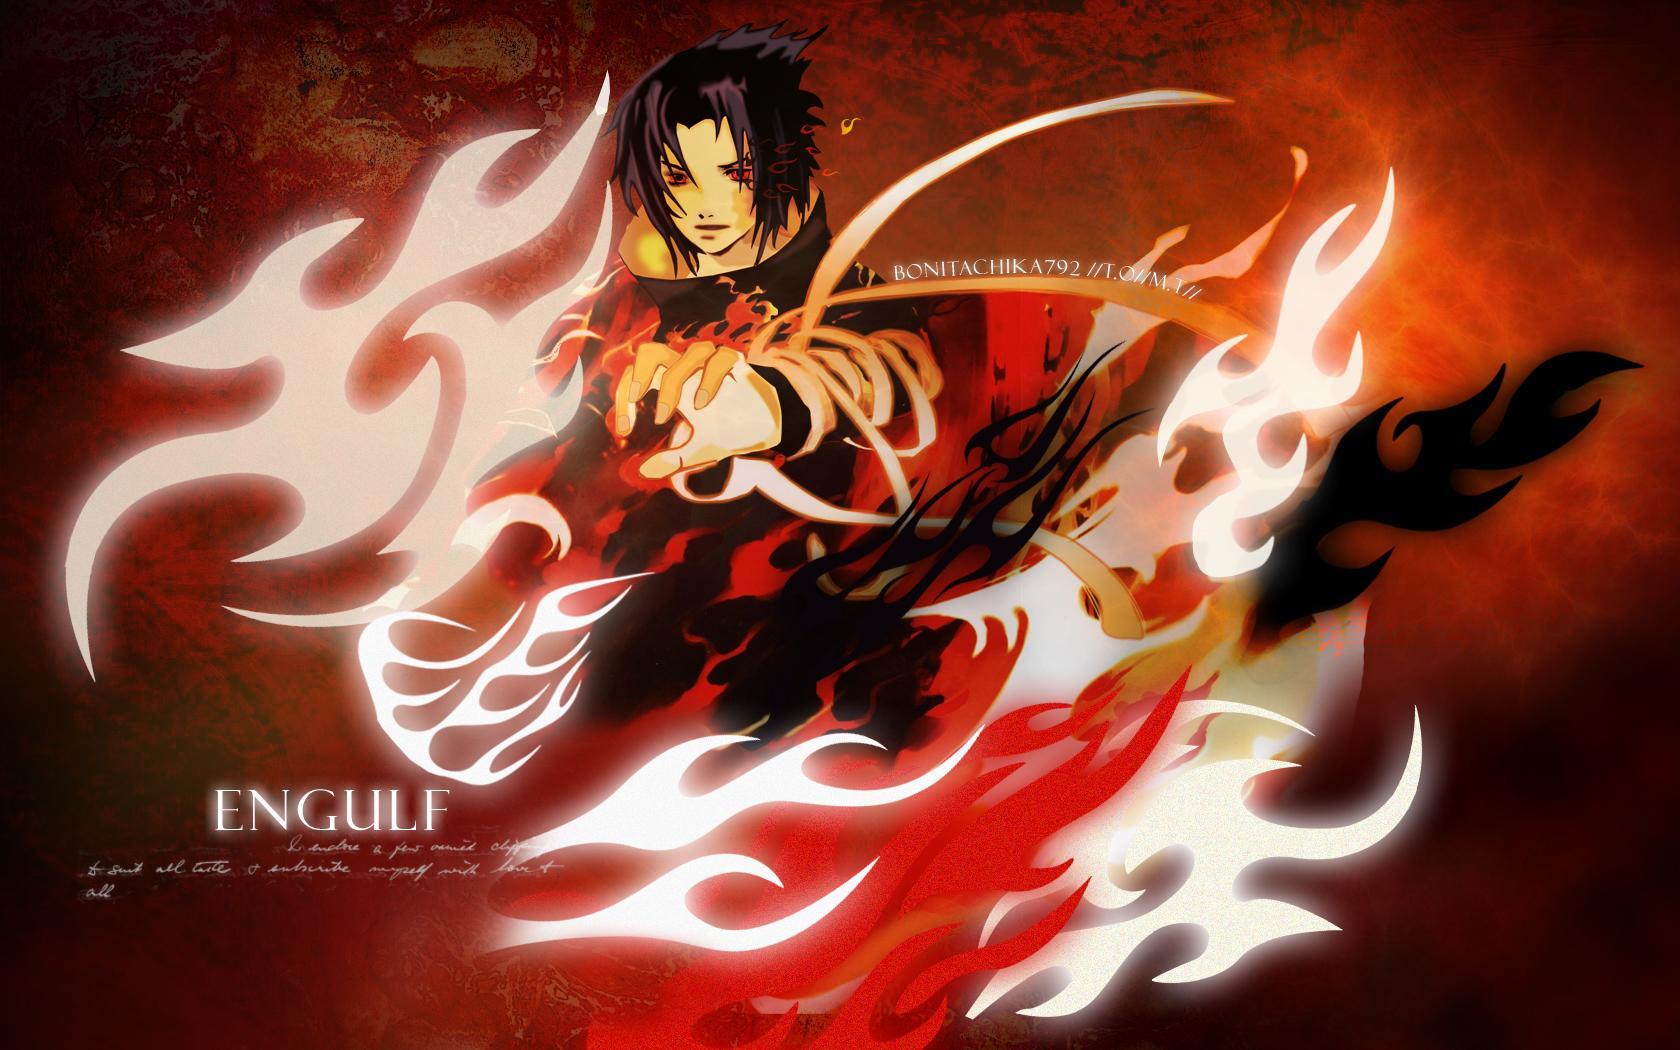 sasuke wallpaper,cg kunstwerk,anime,erfundener charakter,grafikdesign,grafik